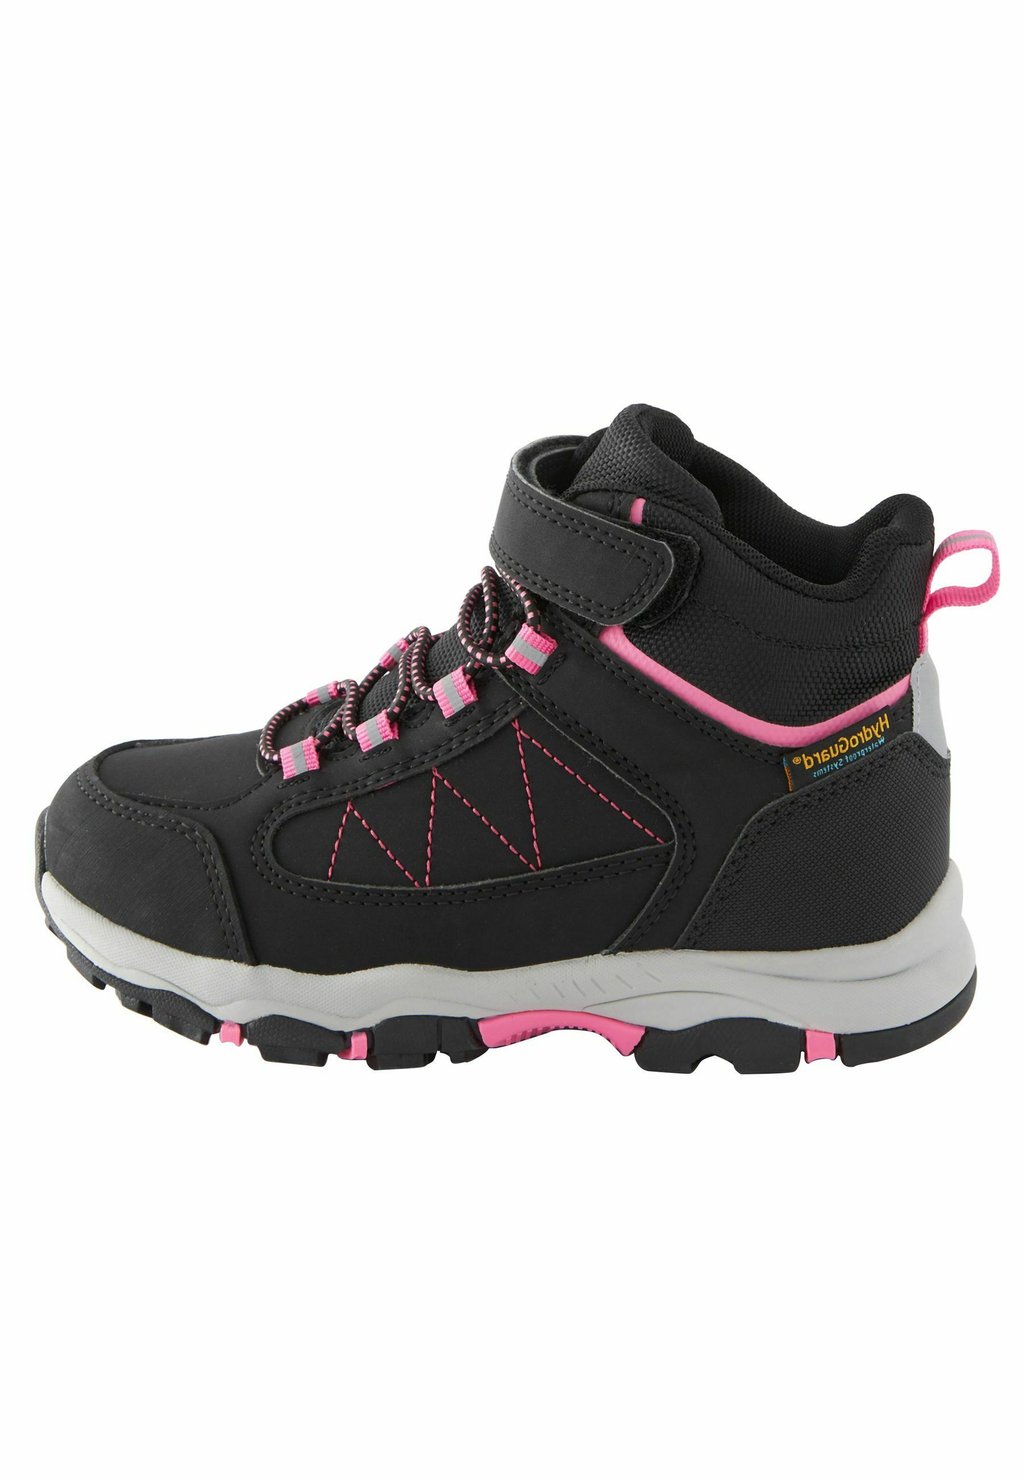 Ботильоны на шнуровке Waterproof Thermal Lined Hiker Next, цвет black pink